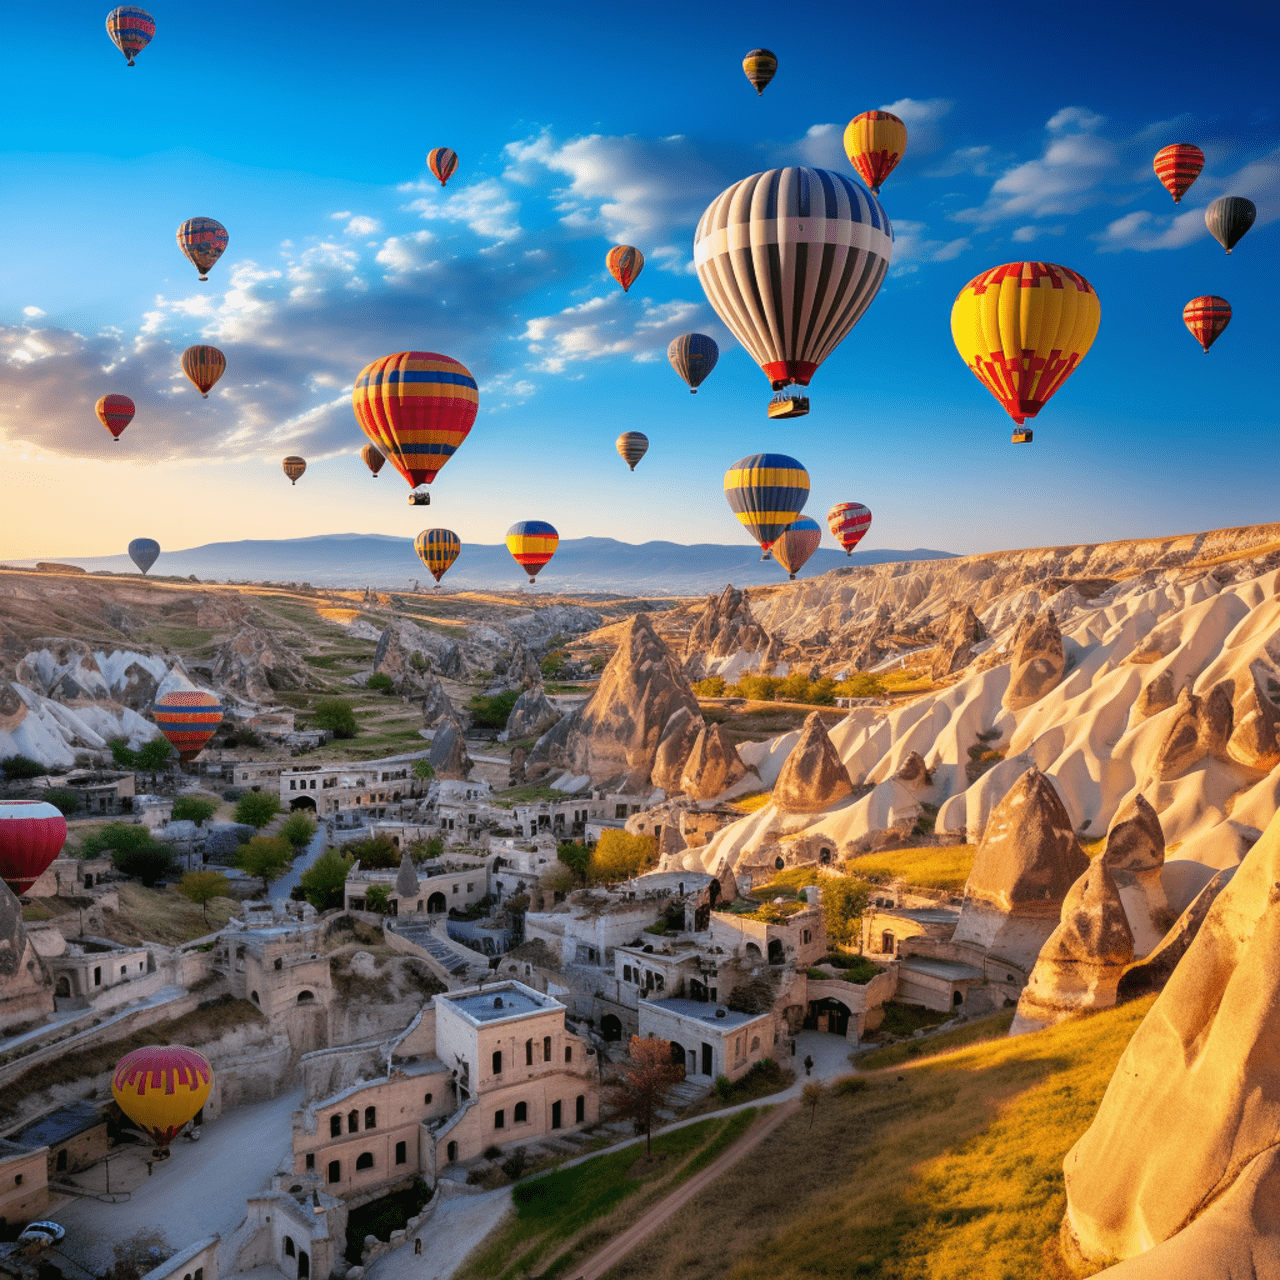 Hot air ballon tour in Cappadocia